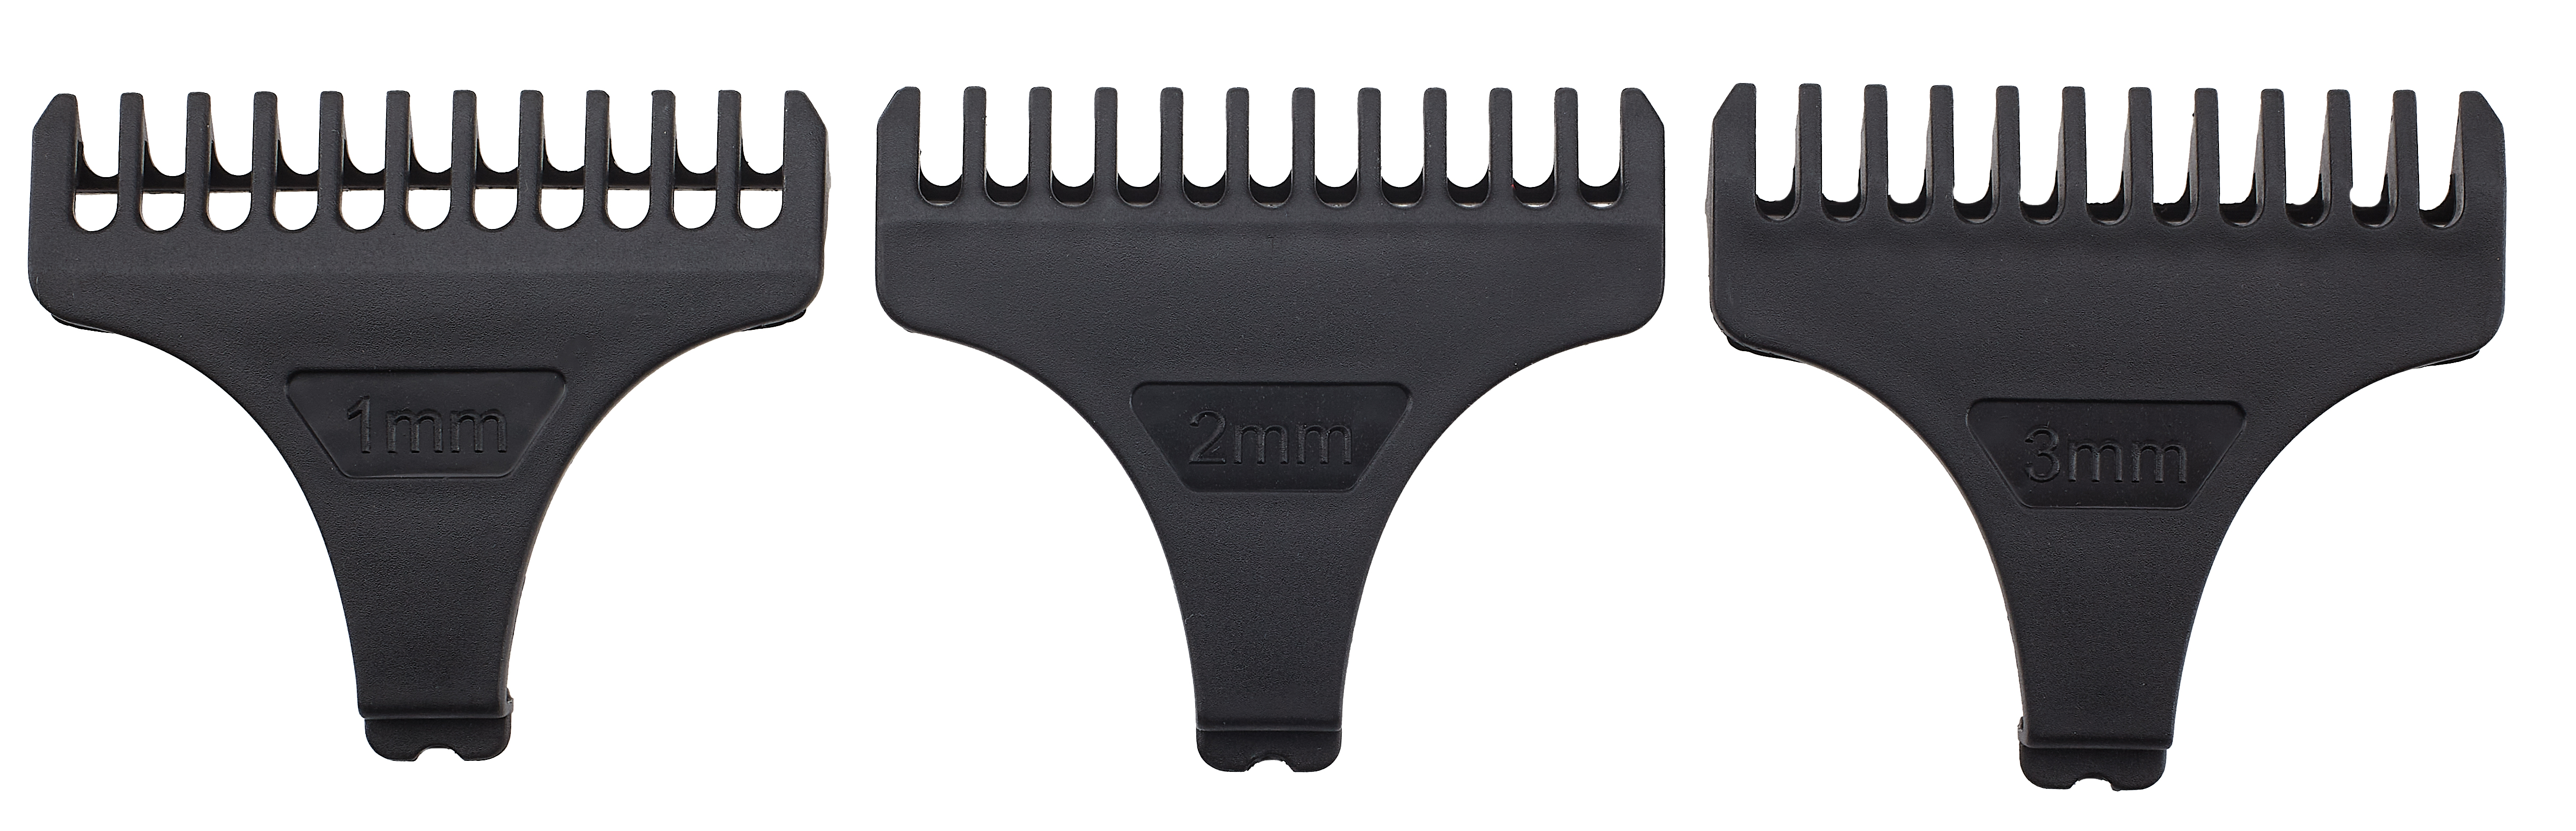 BAD BUTCH Comb attachments for precision trimmer